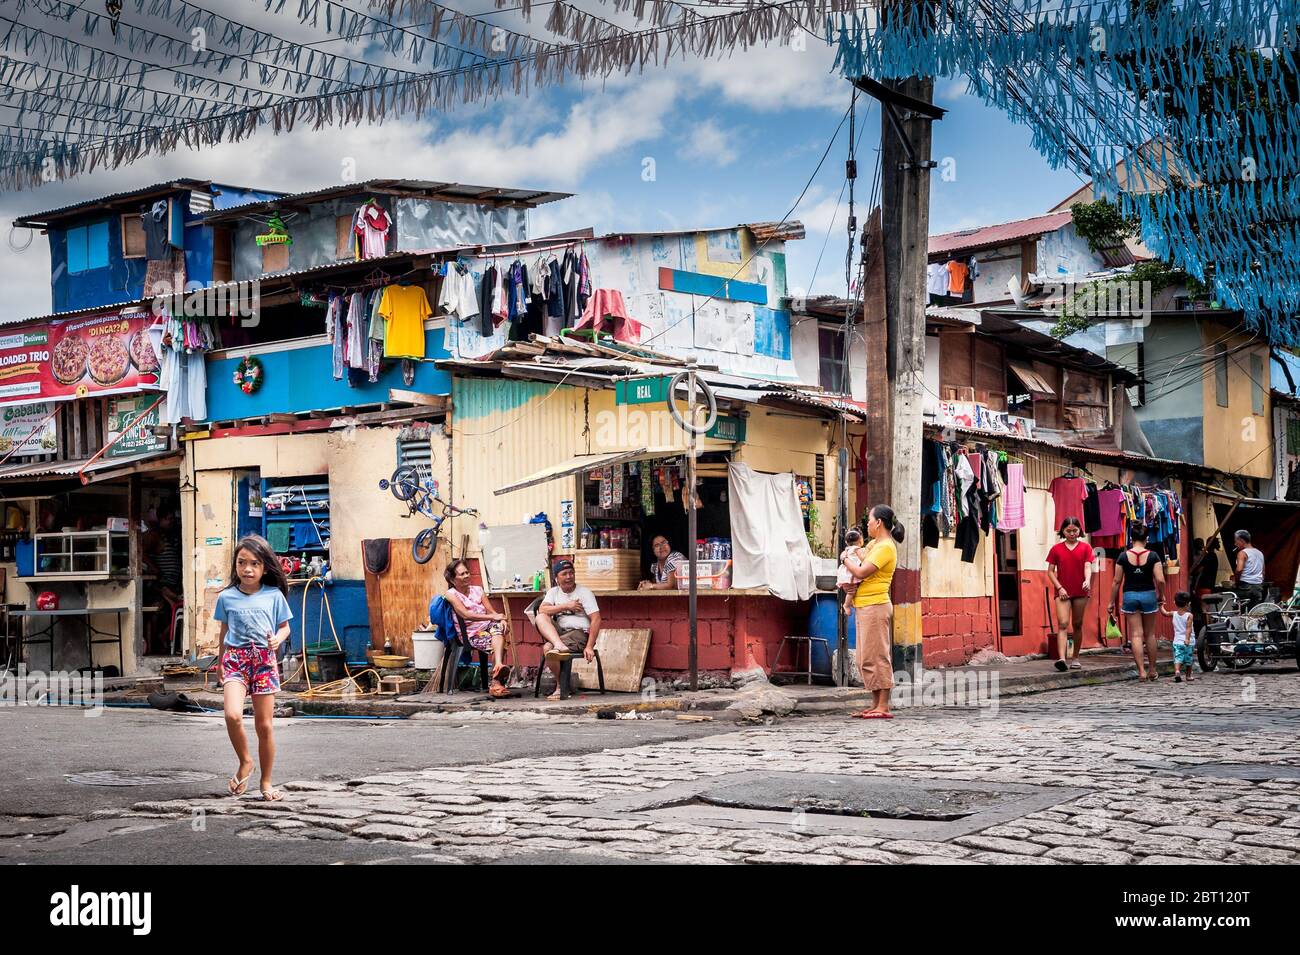 Scatti di un incrocio stradale colorato e trafficato nella vecchia città murata di Intramurous, Manila, le Filippine. Foto Stock